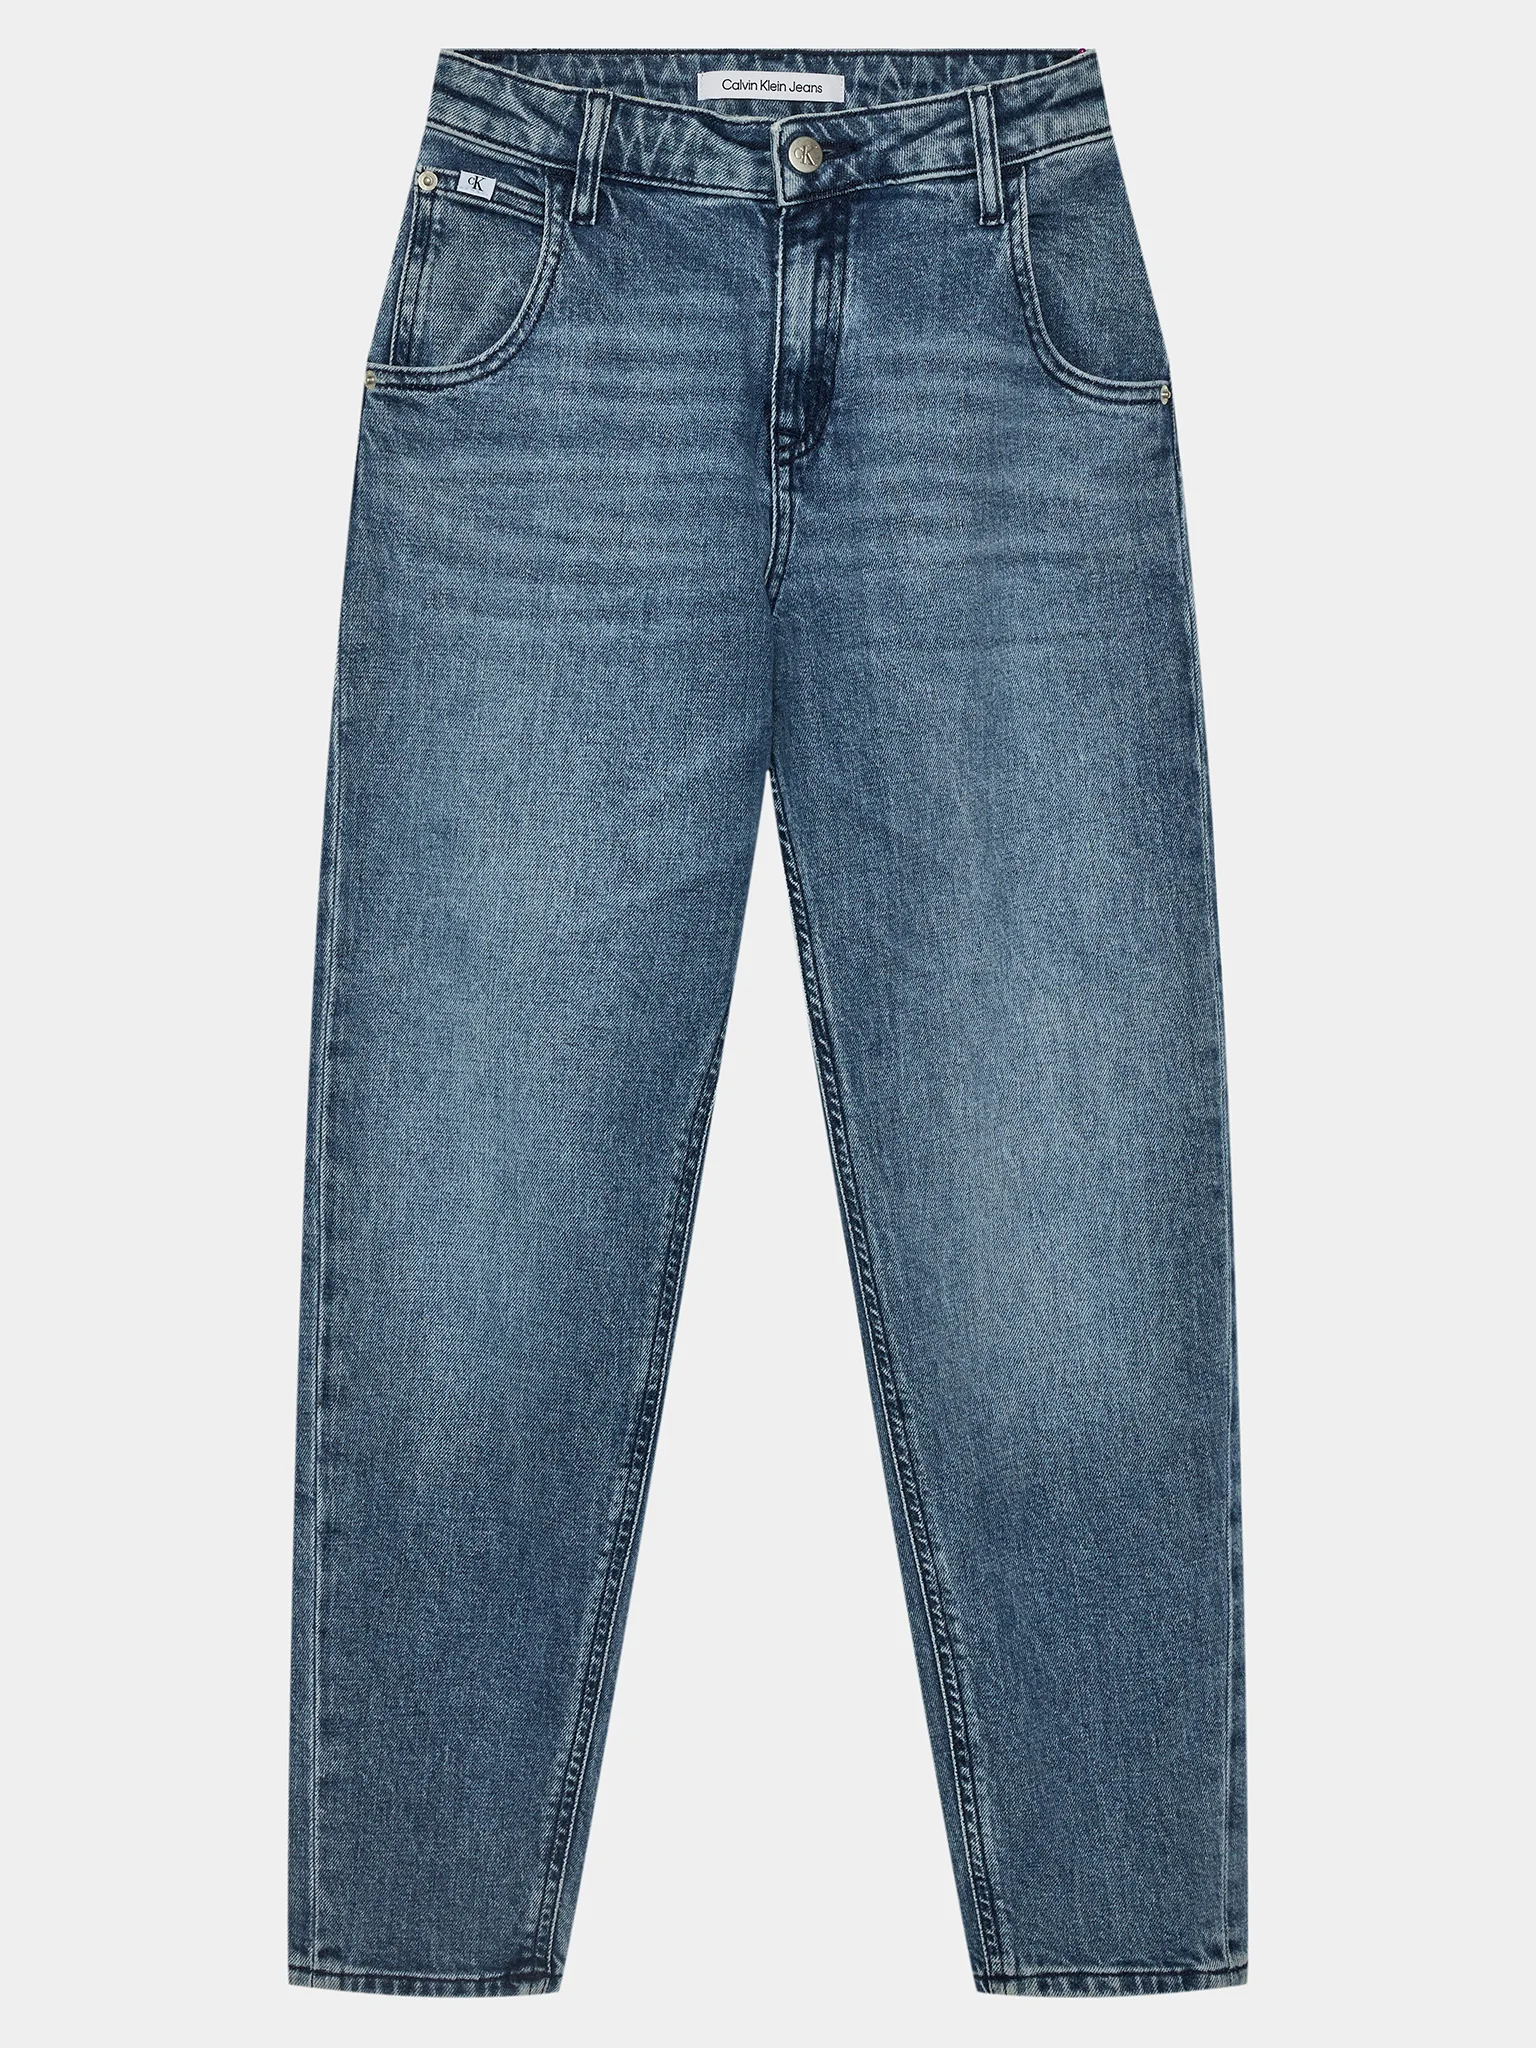 calvin-klein-jeans-jeans-barrel-ig0ig02275-blu-straight-fit-0000303102463